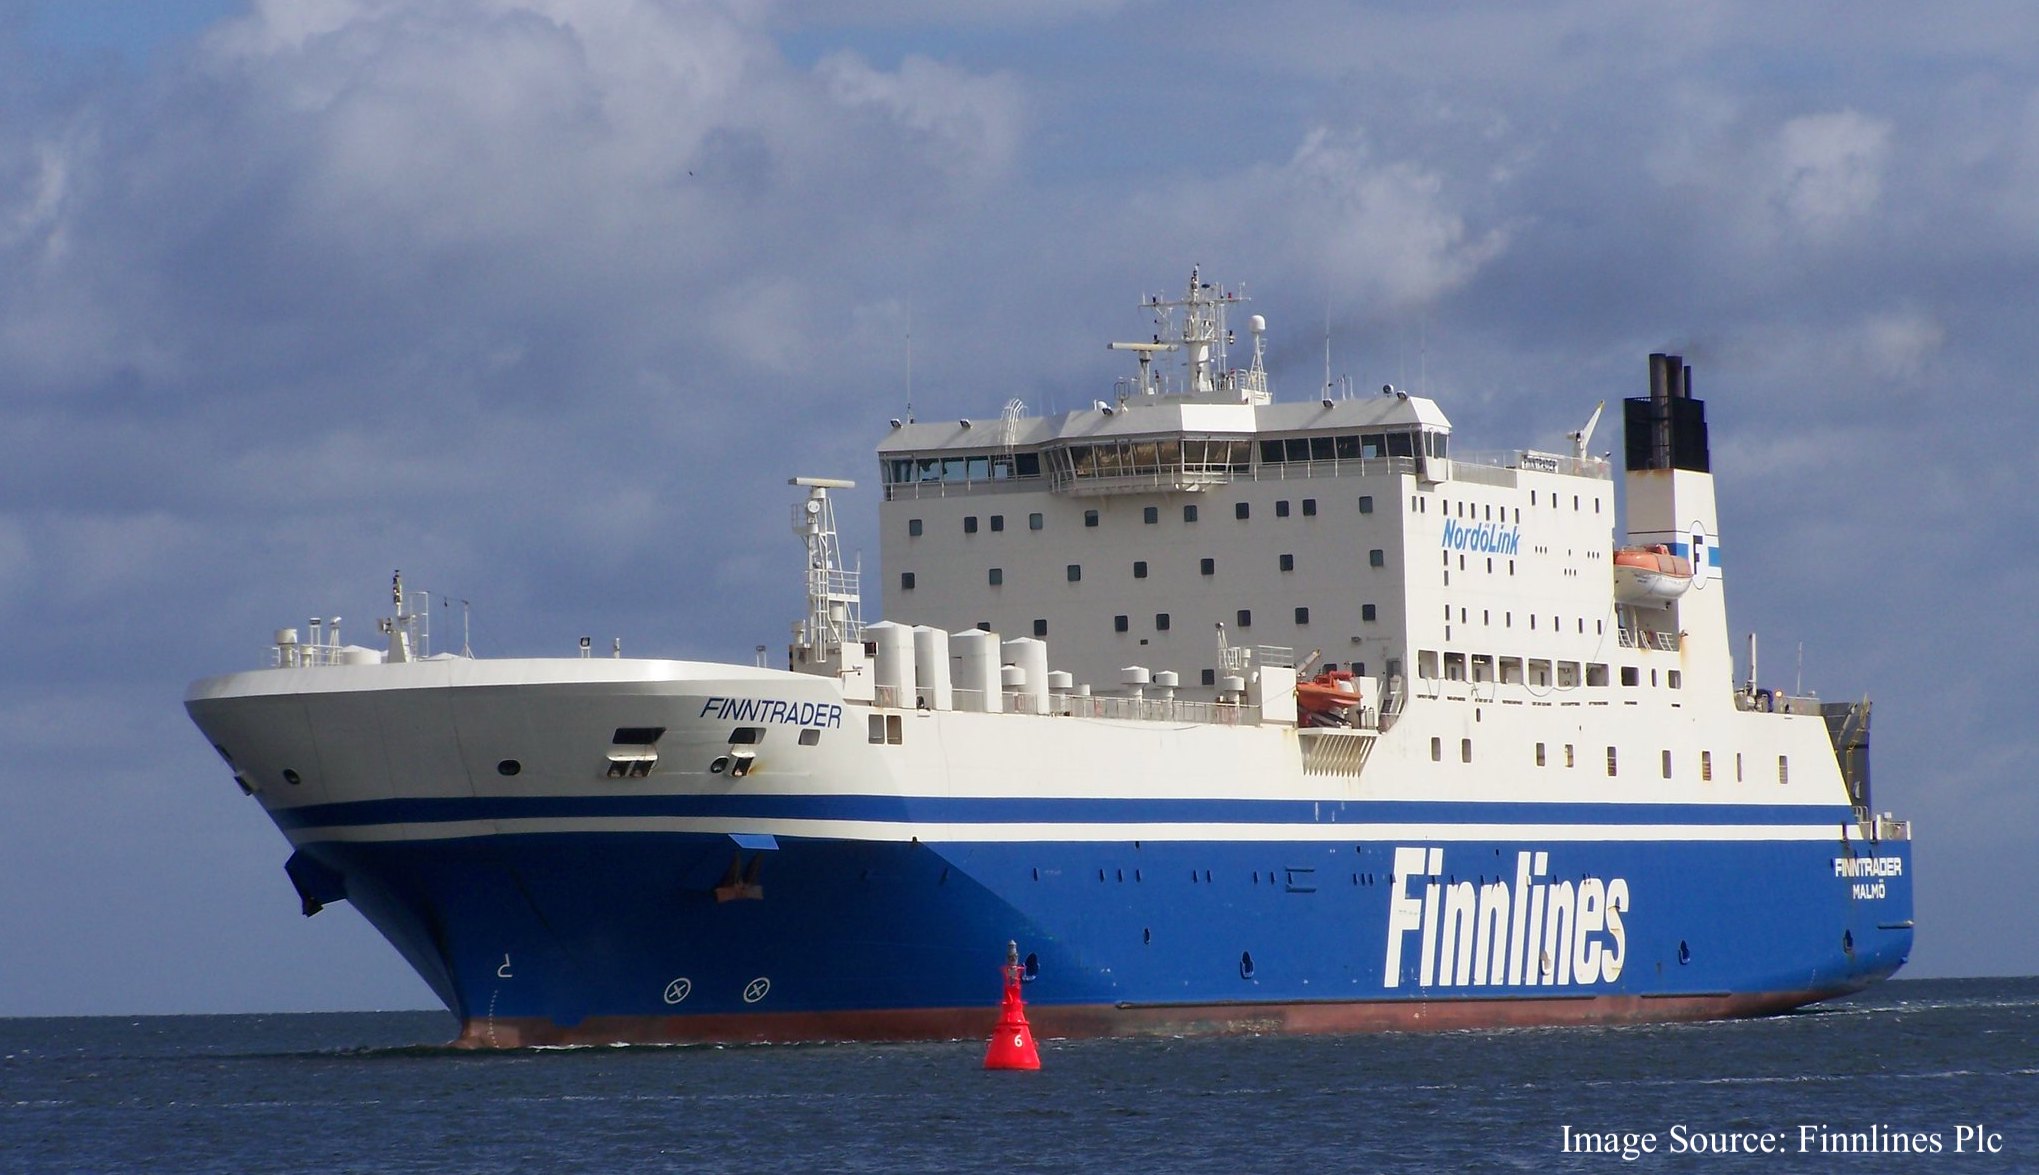 Foto av Finnlines - Finntrader skepp